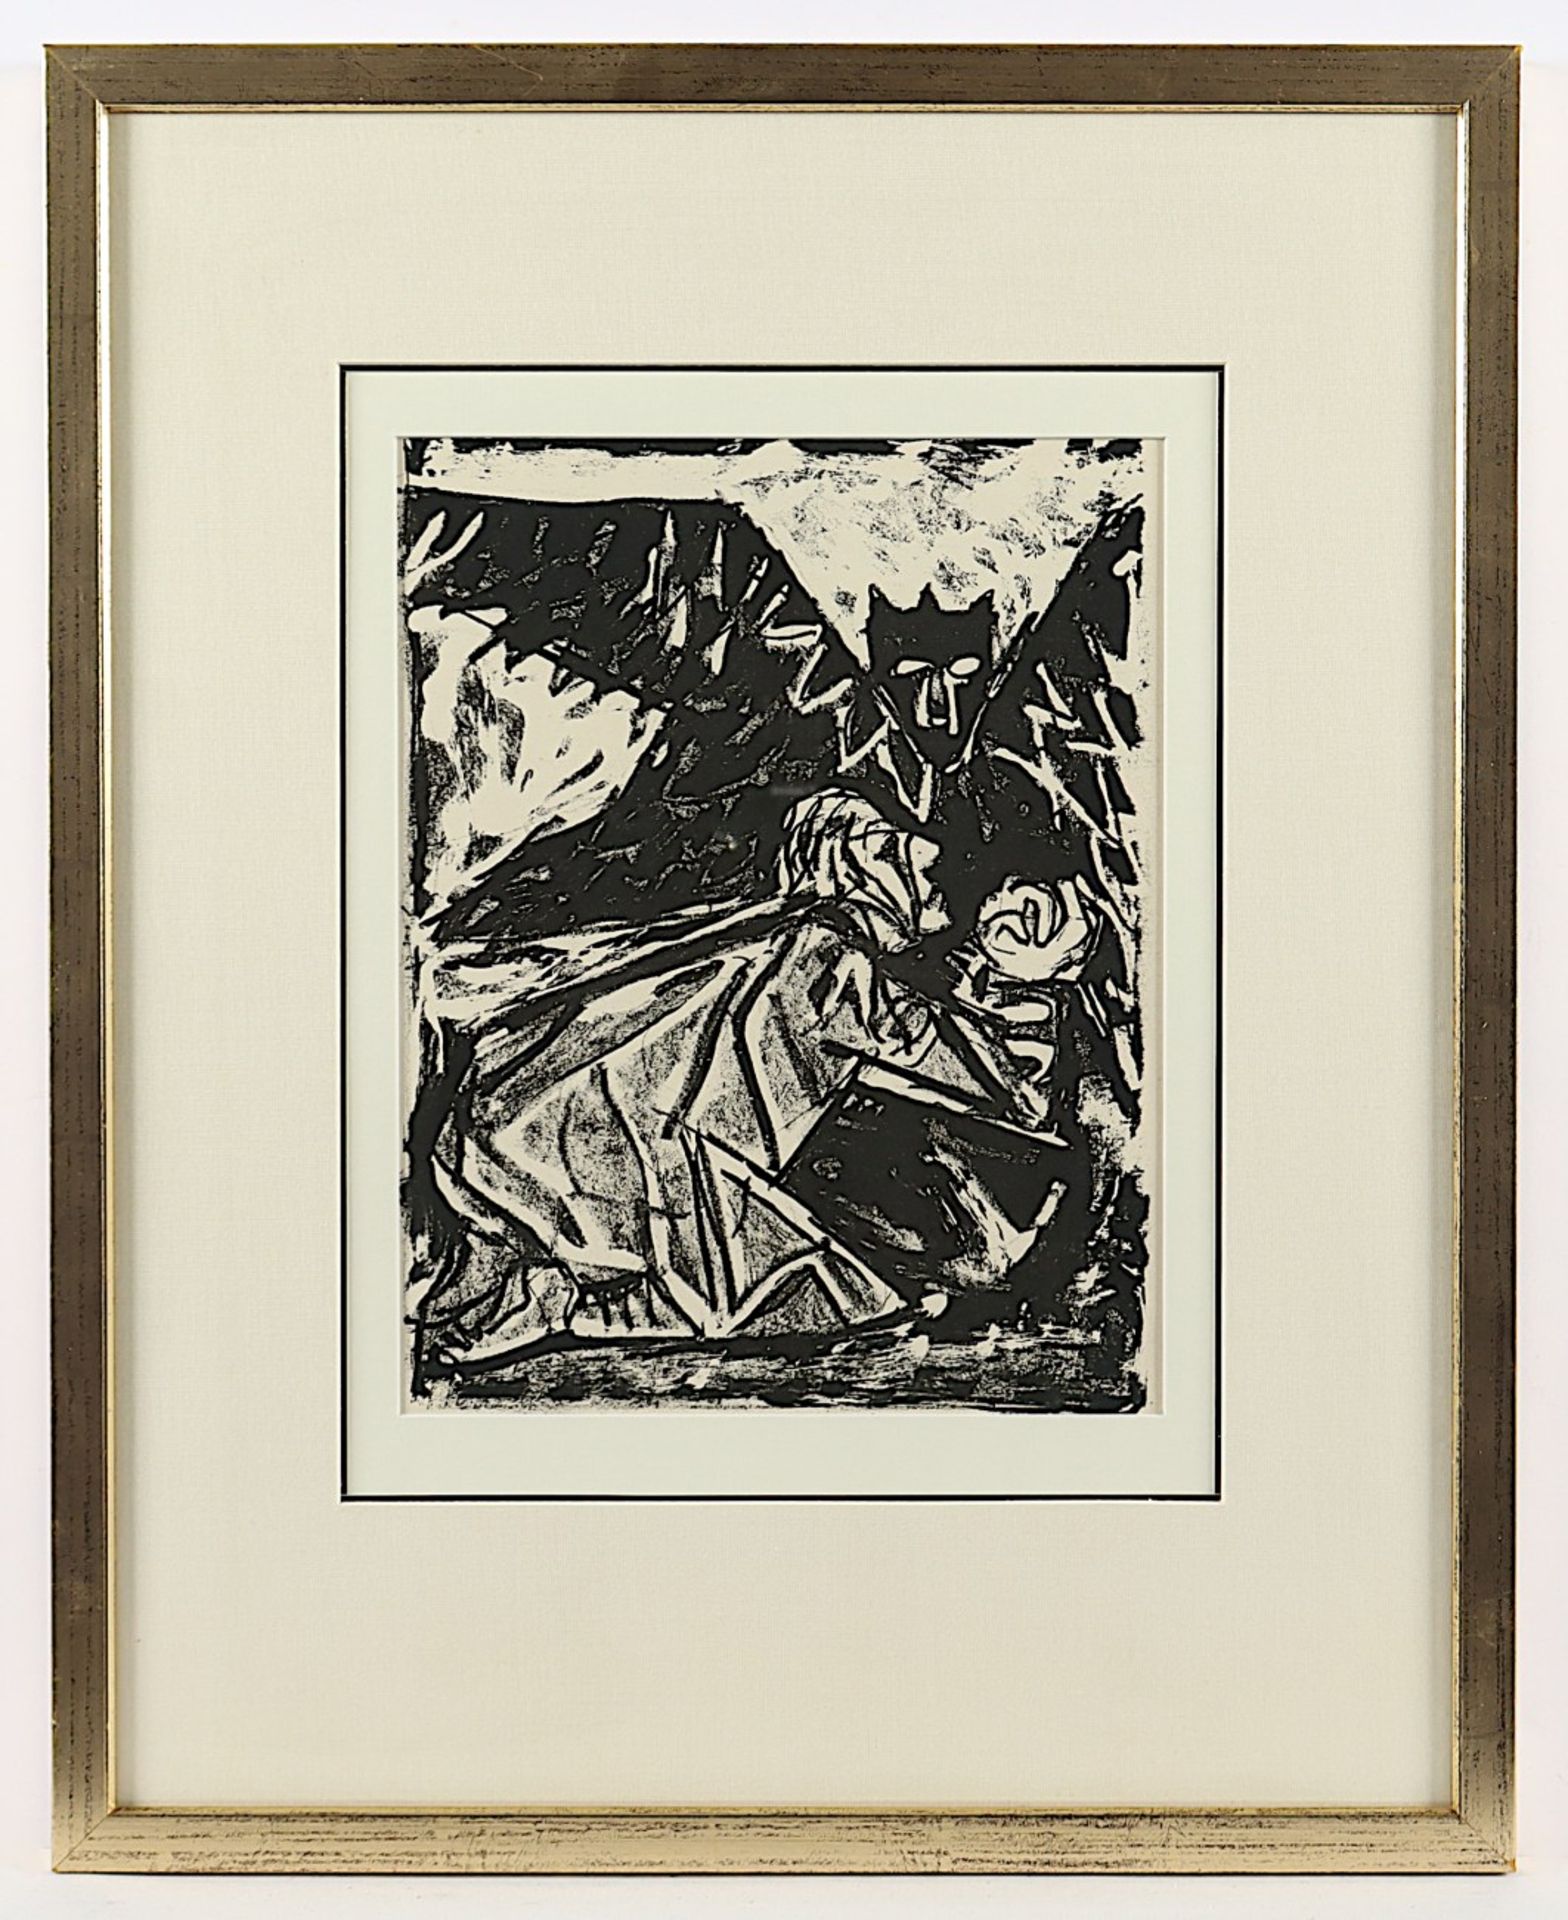 DIX, Otto, "Gethsemane", Original-Lithografie, 29 x 22, zum Matthäus-Evangelium, 1960, WV 259, R.